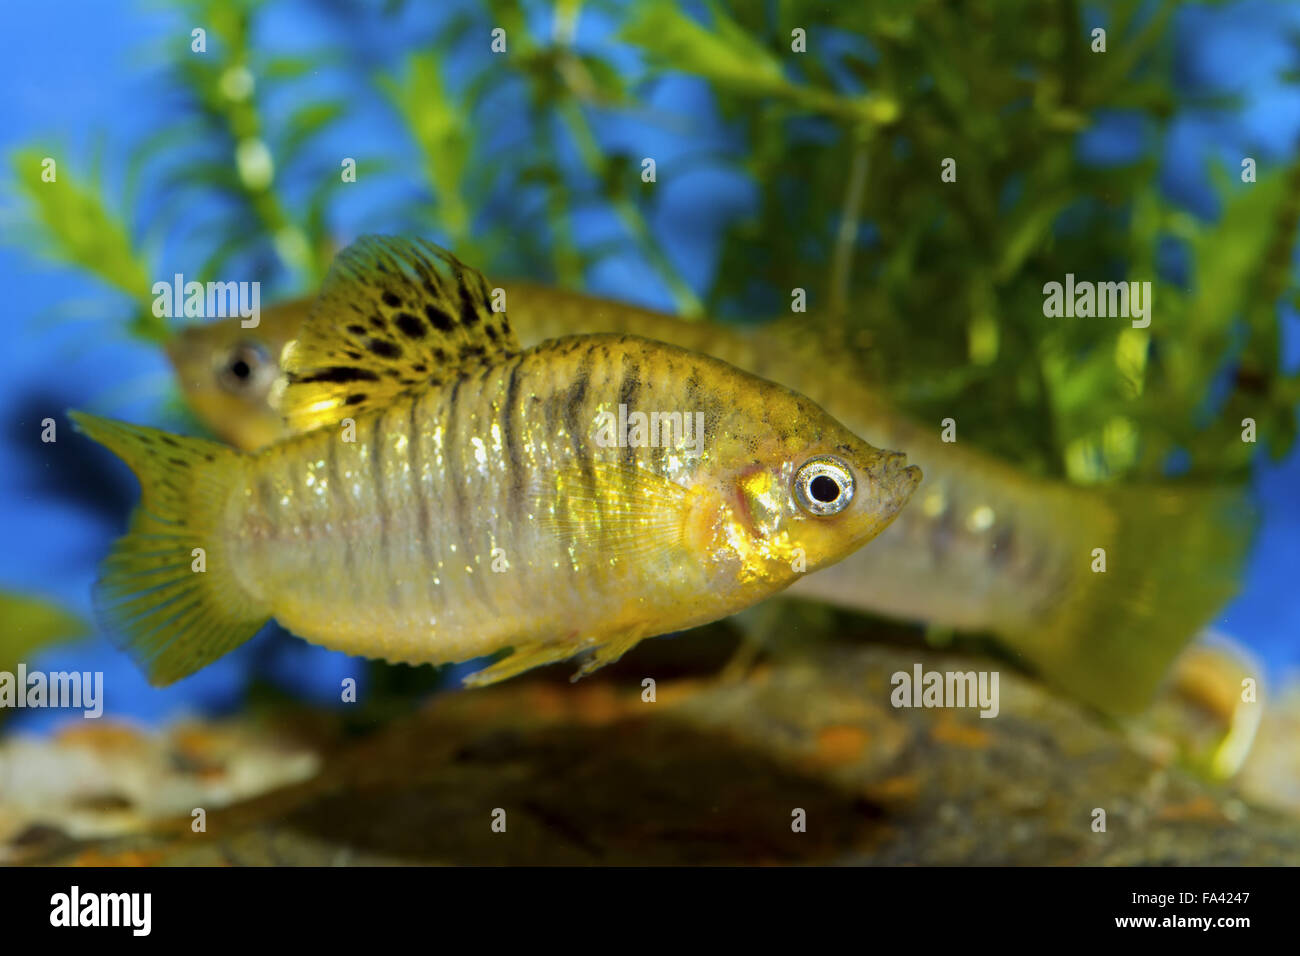 Fish from genus Poecilia in a aquatrium Stock Photo